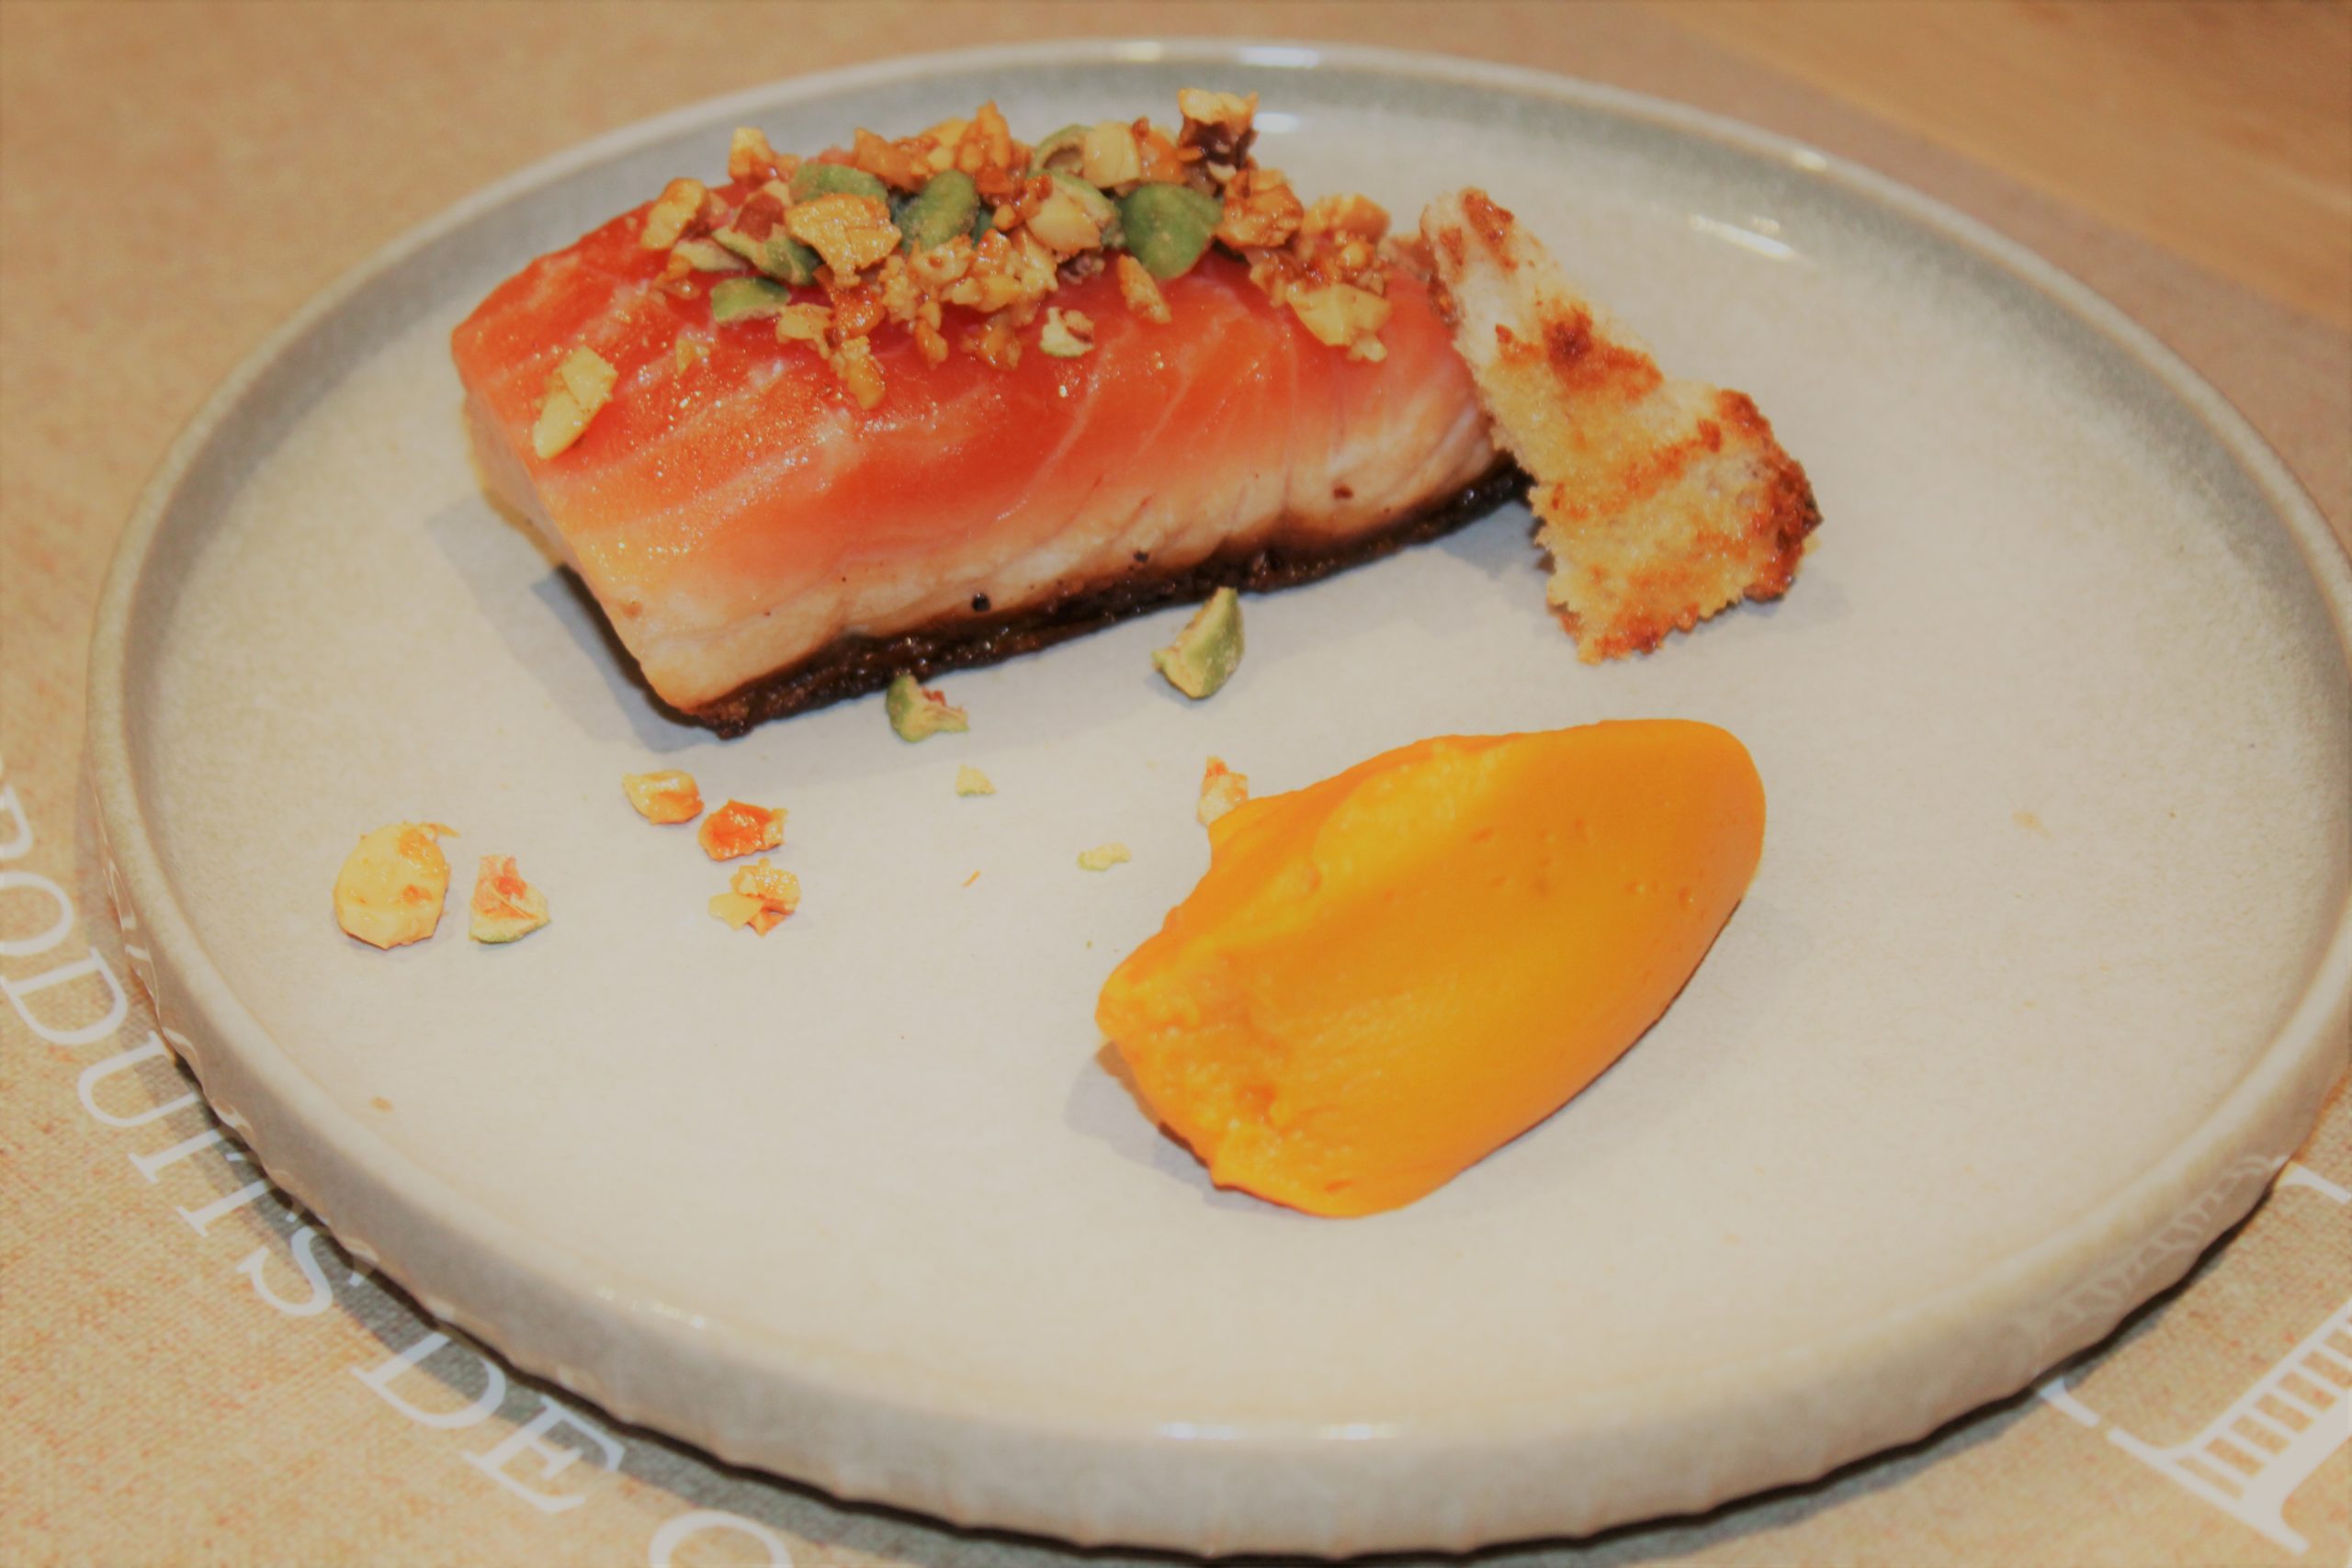 voici une recette avec des noix de cajou et cacahuètes wasabi, accompagnant un pave de saumon et une purée de patates douces